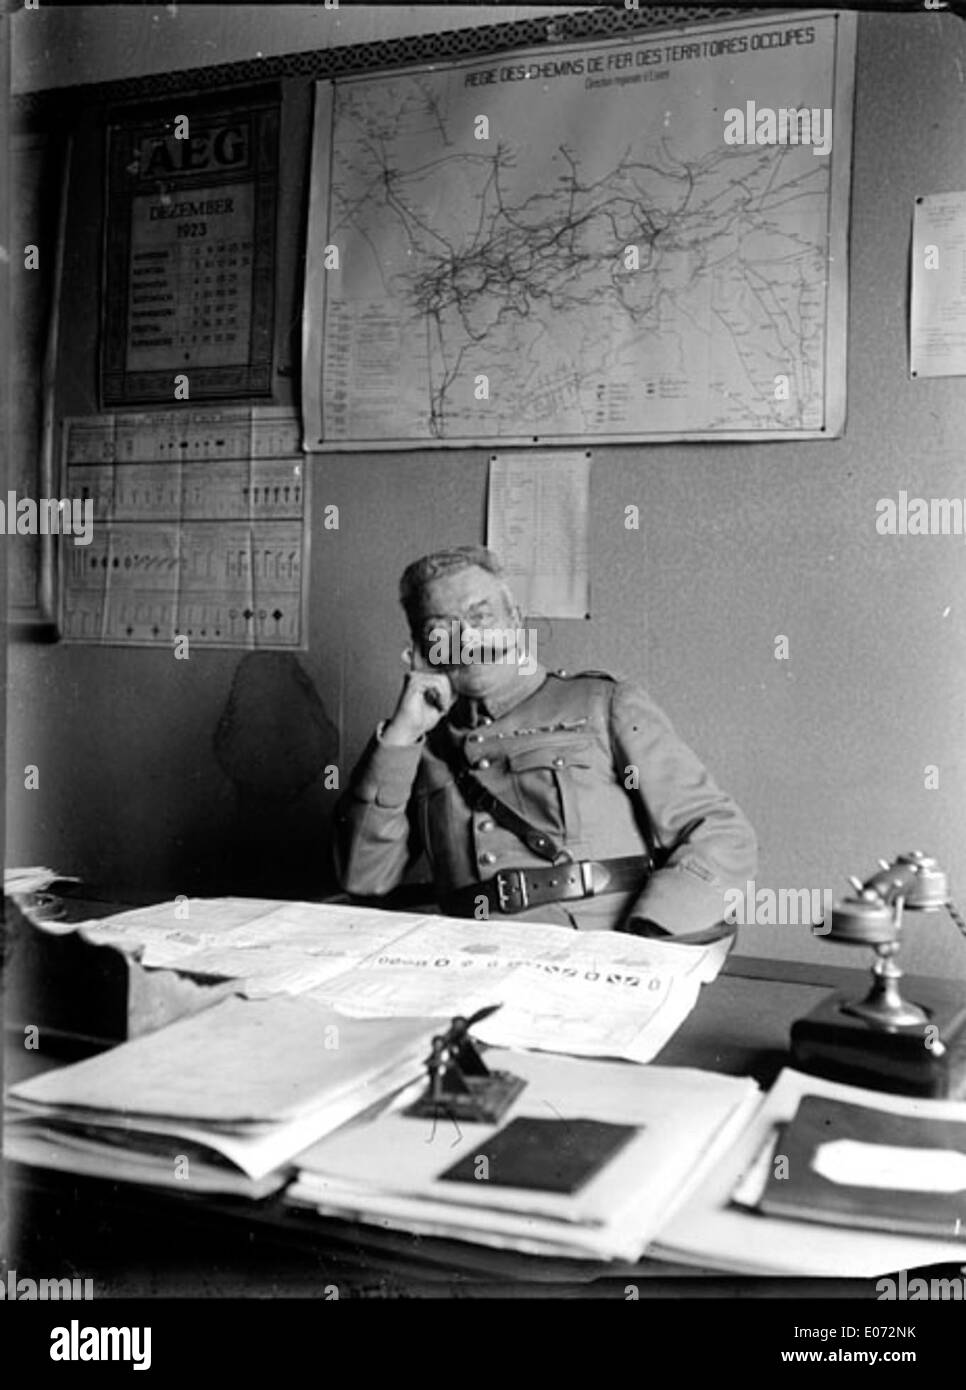 Officier militaire assis à son bureau, Régie des chemins de fer, Essen (Allemagne), décembre 1923 Stock Photo